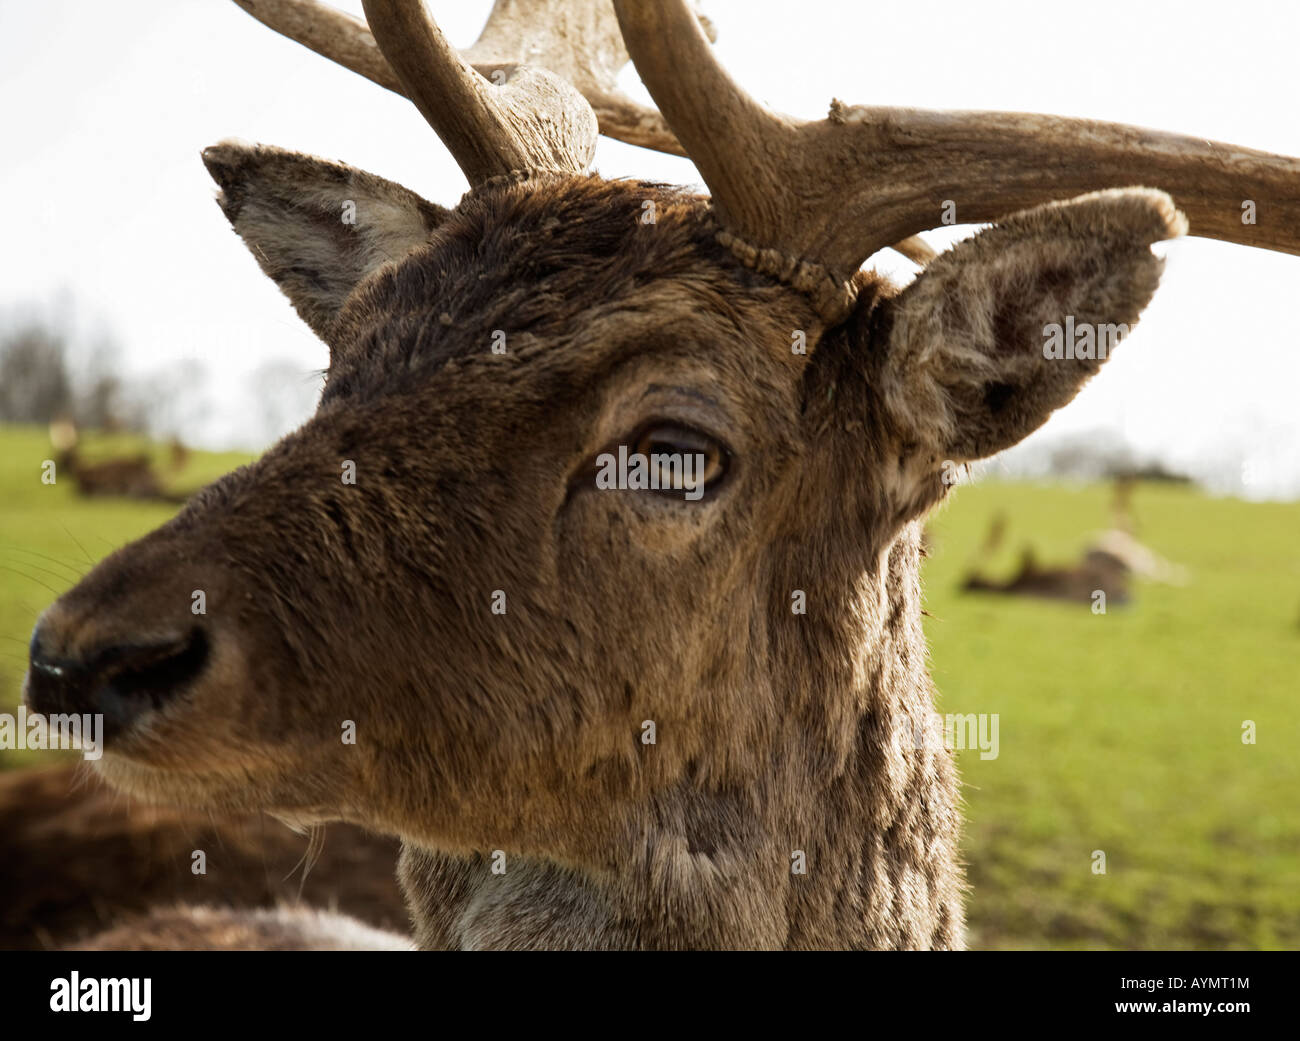 Deer face,England,UK Stock Photo